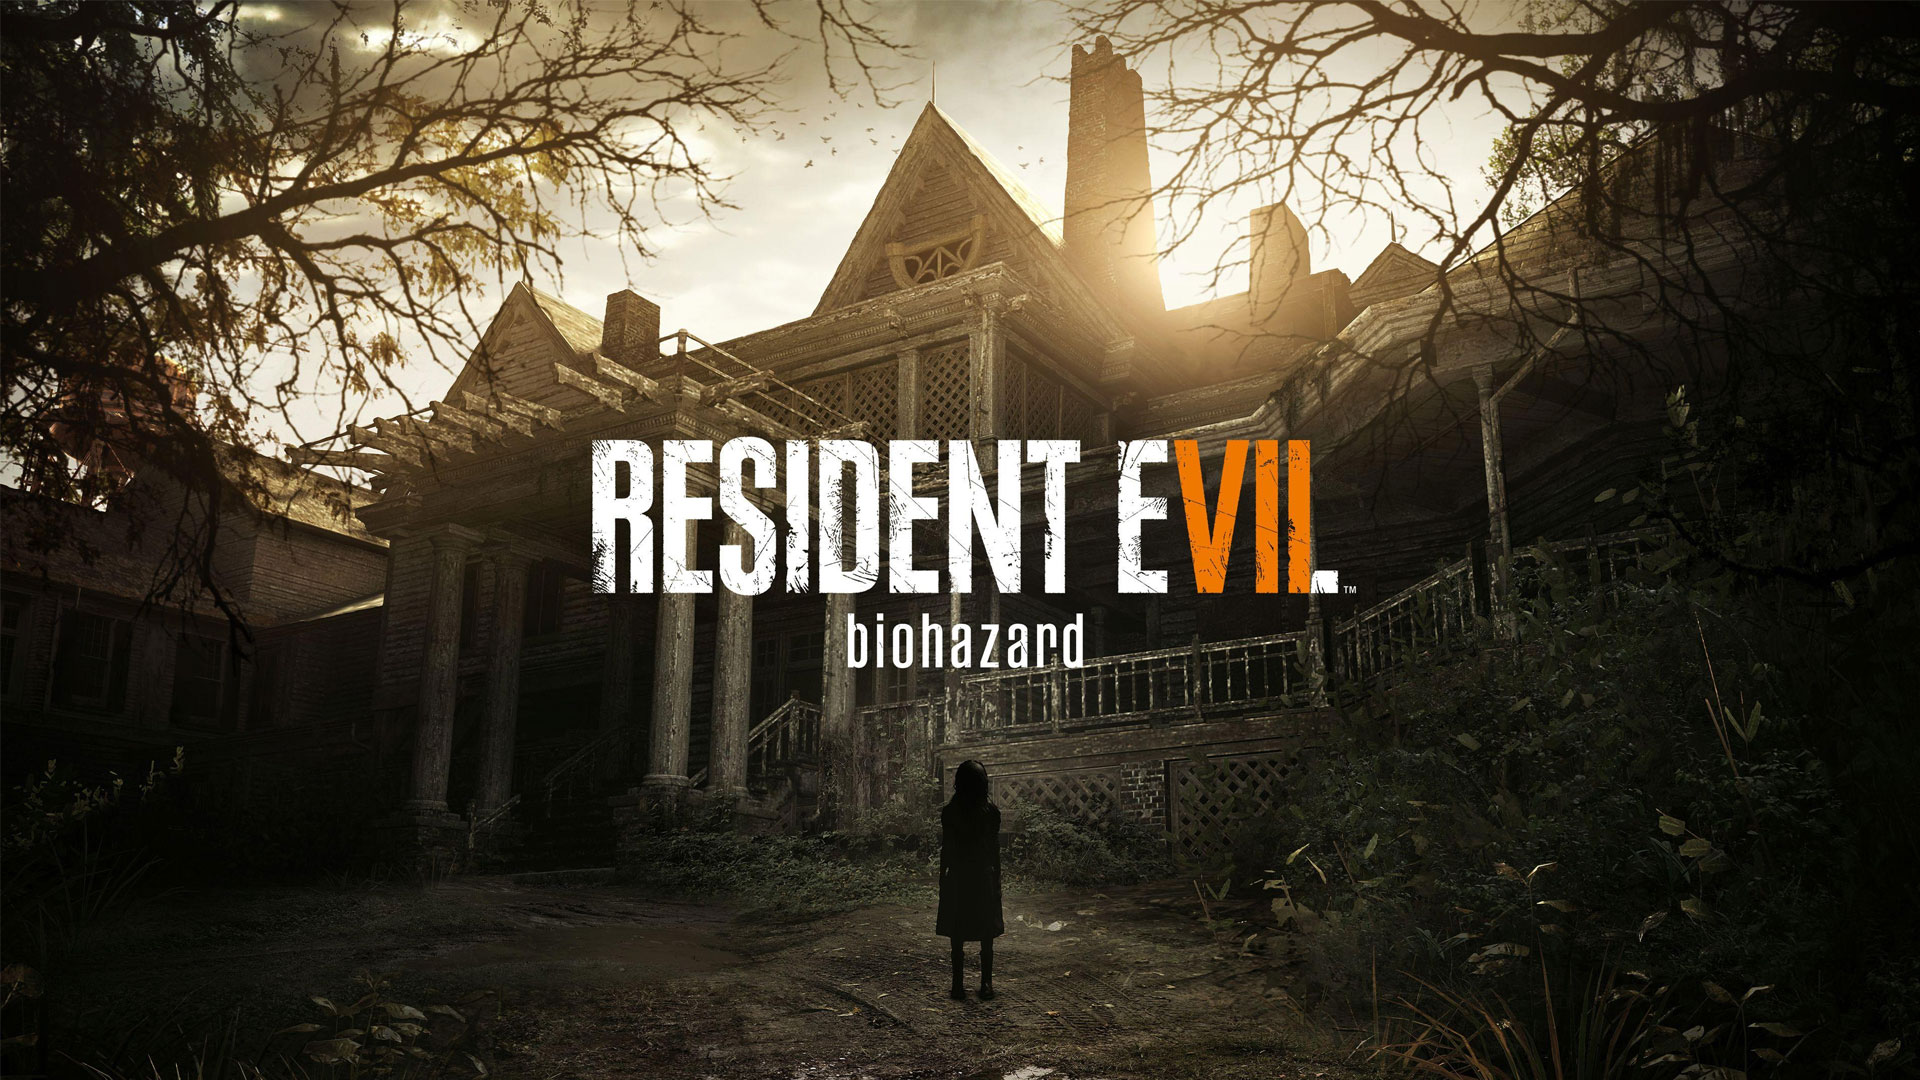 فروش بازی Resident Evil 7: Biohazard به ۱۱ میلیون نسخه رسید